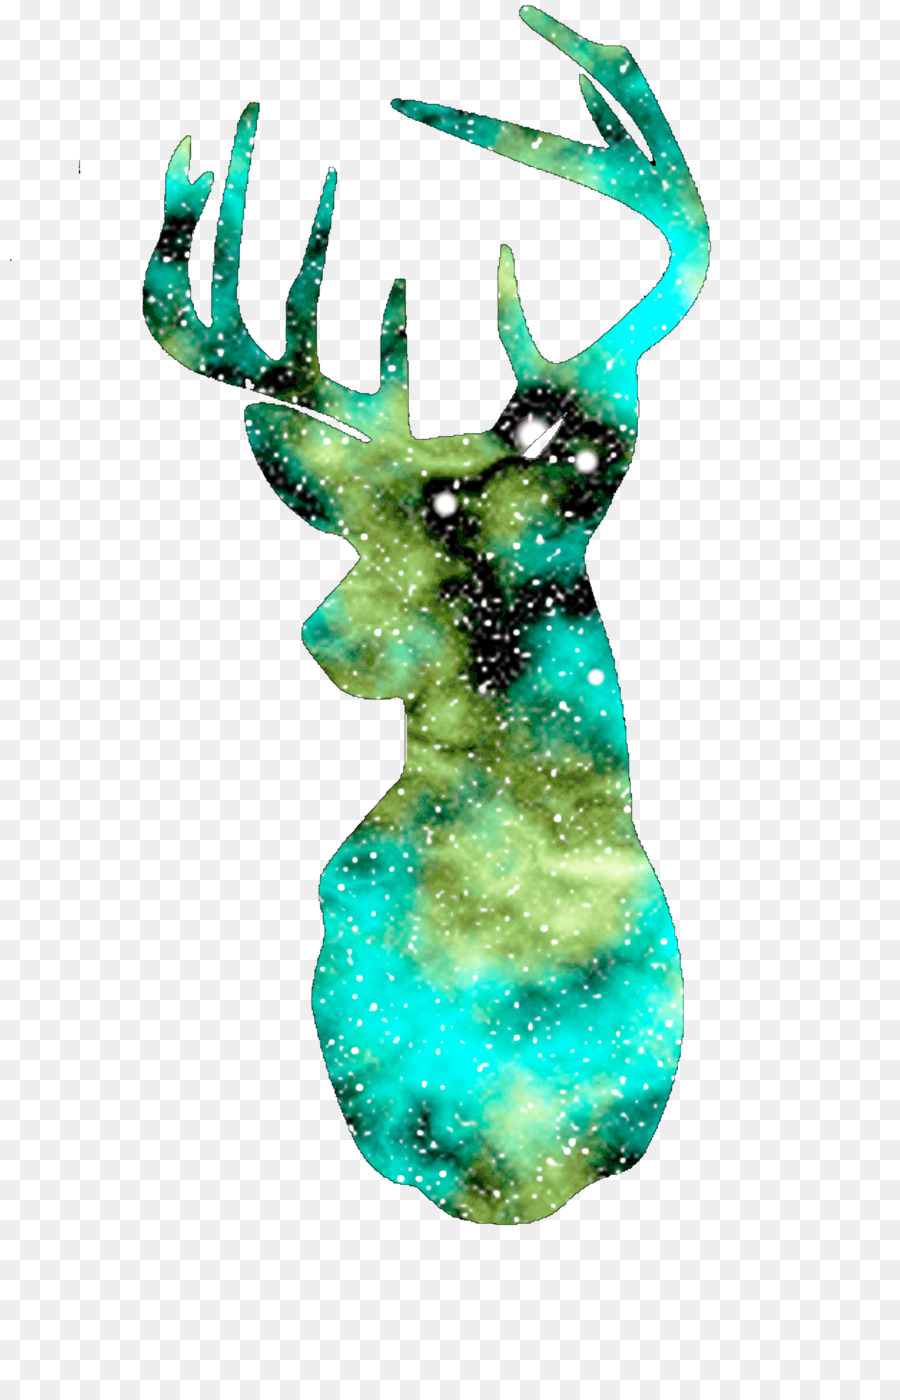 Deer Antler Drawing Printmaking Art - deer head png download - 3300*5100 - Free Transparent Deer png Download.